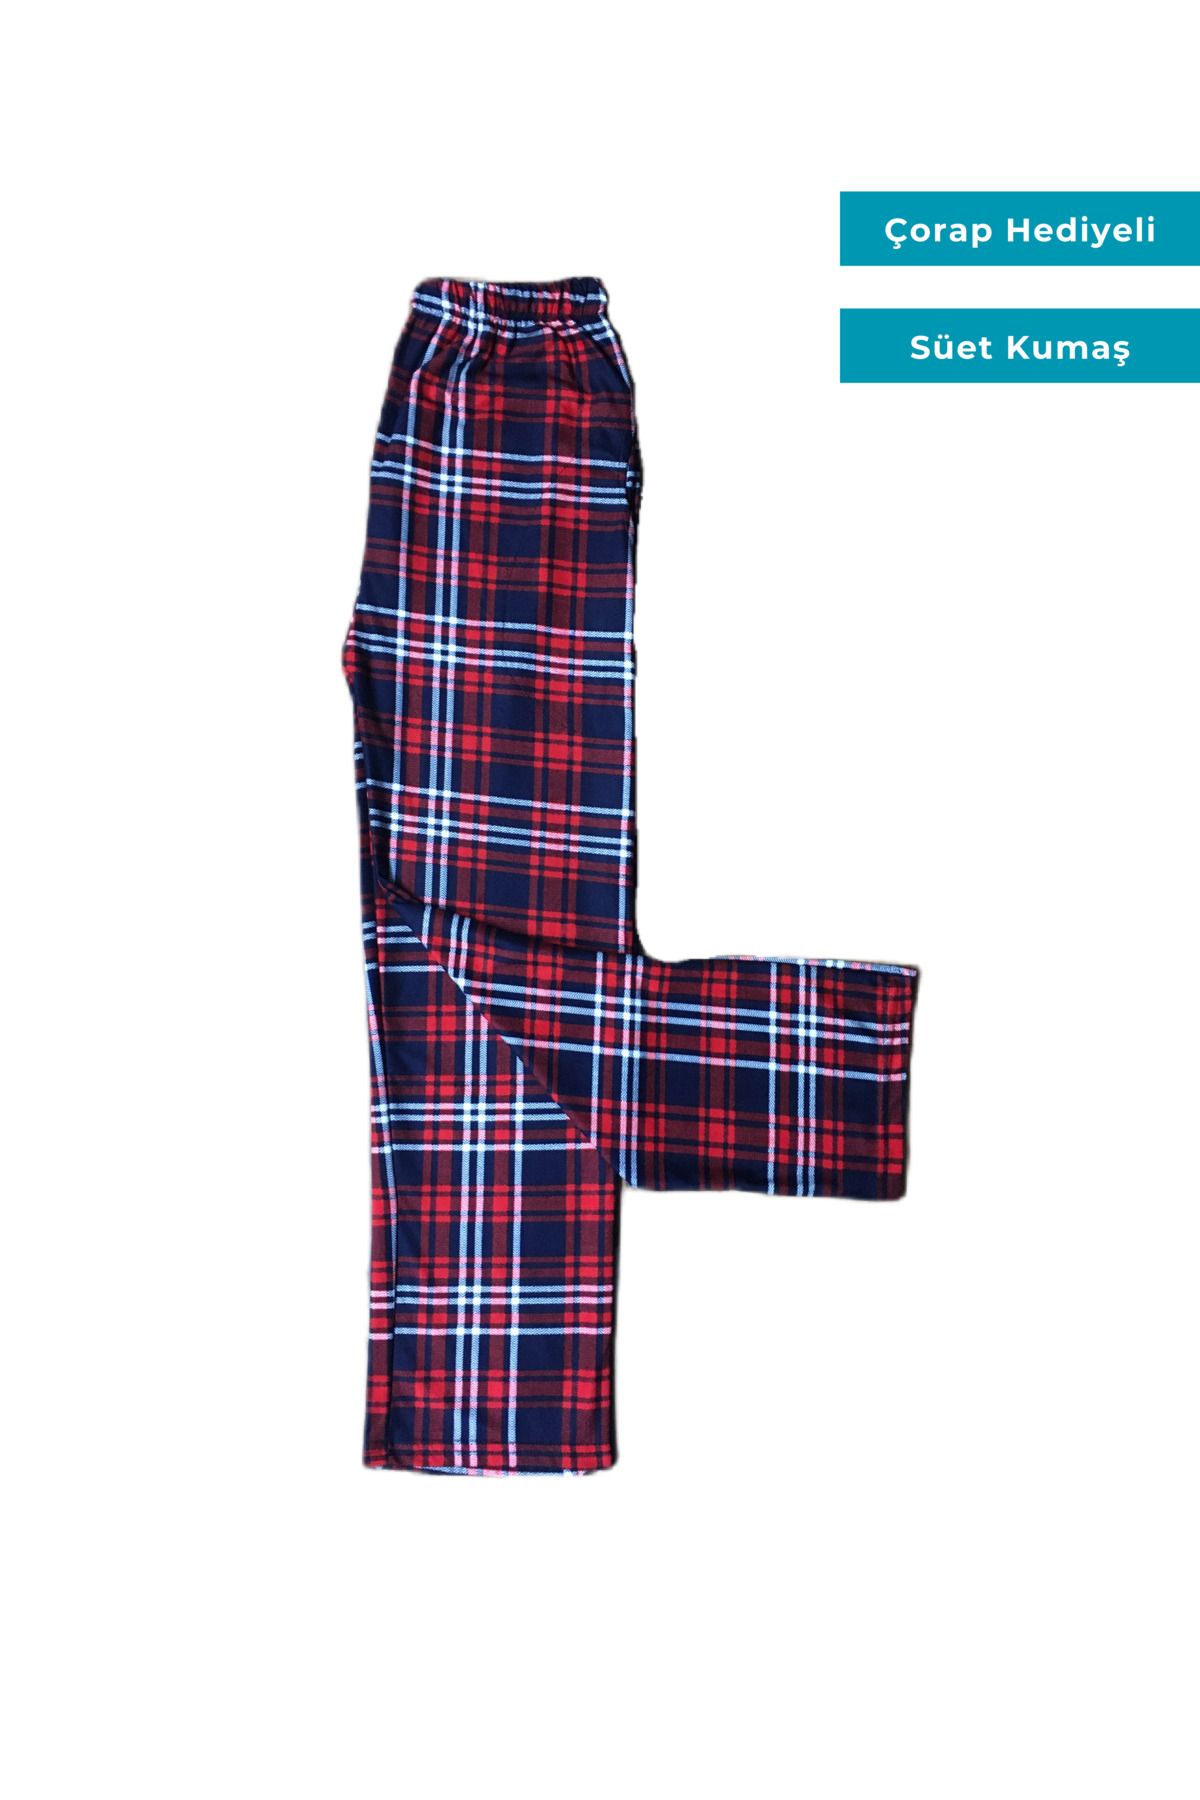 Ece Kadın Ekoseli Kareli Desenli Cepli Süet Kumaş Pijama Alt Çorap Hediyeli